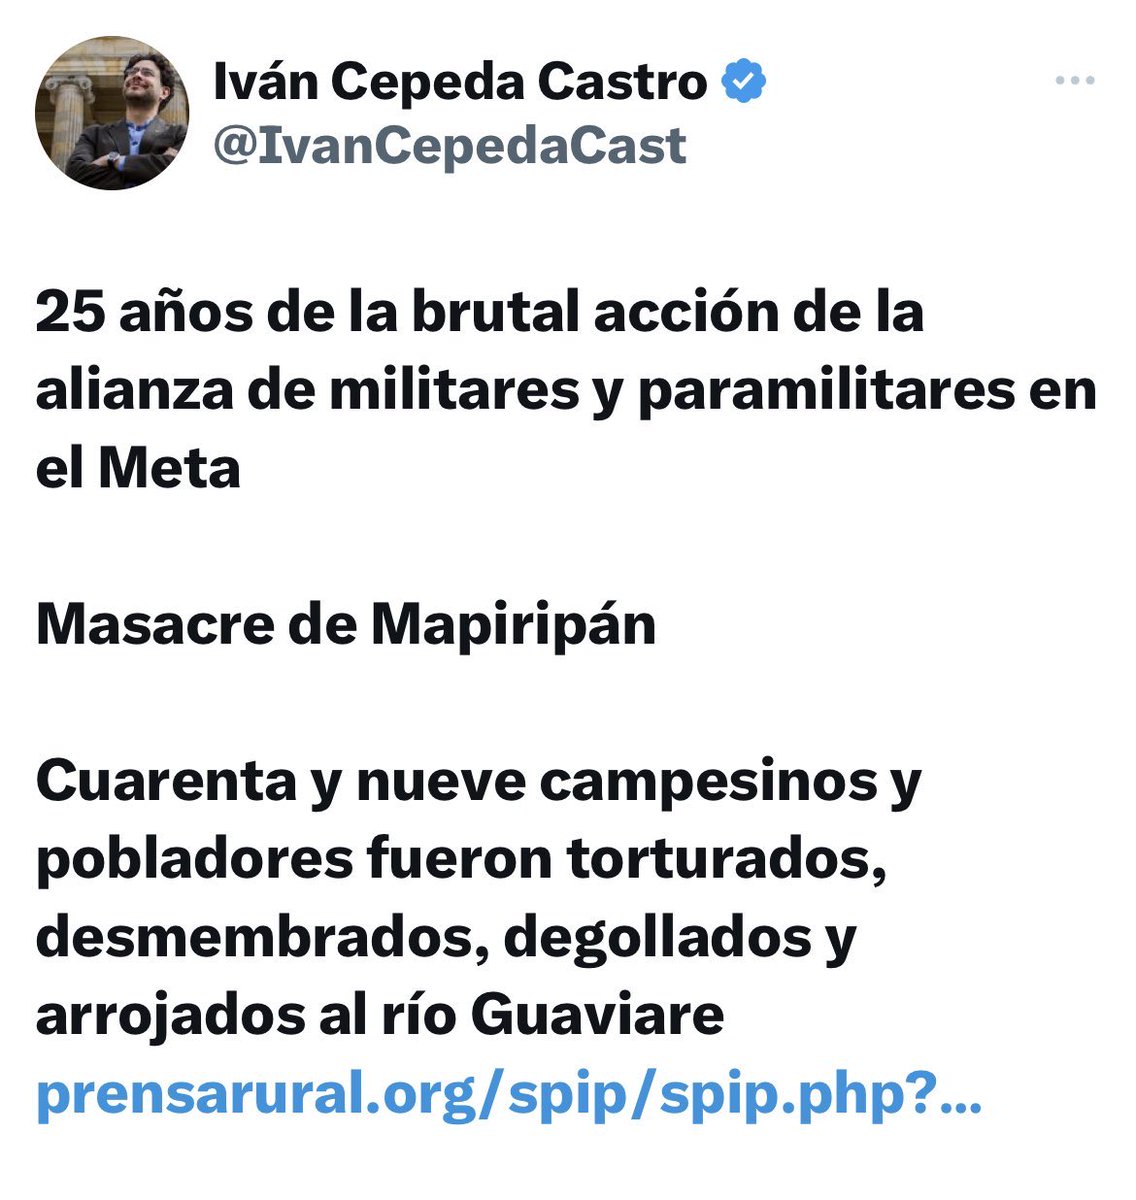 Entonces “Martín Sombra” confiesa que la masacre de Mapiripán fue perpetrada por las FARC “Marco Aurelio Buendias” y ellos culparon al ejército para poder pedir millonarias indemnizaciones , acusaron injustamente a 2 altos militares Rito Alejo del Río y al general Uscategui